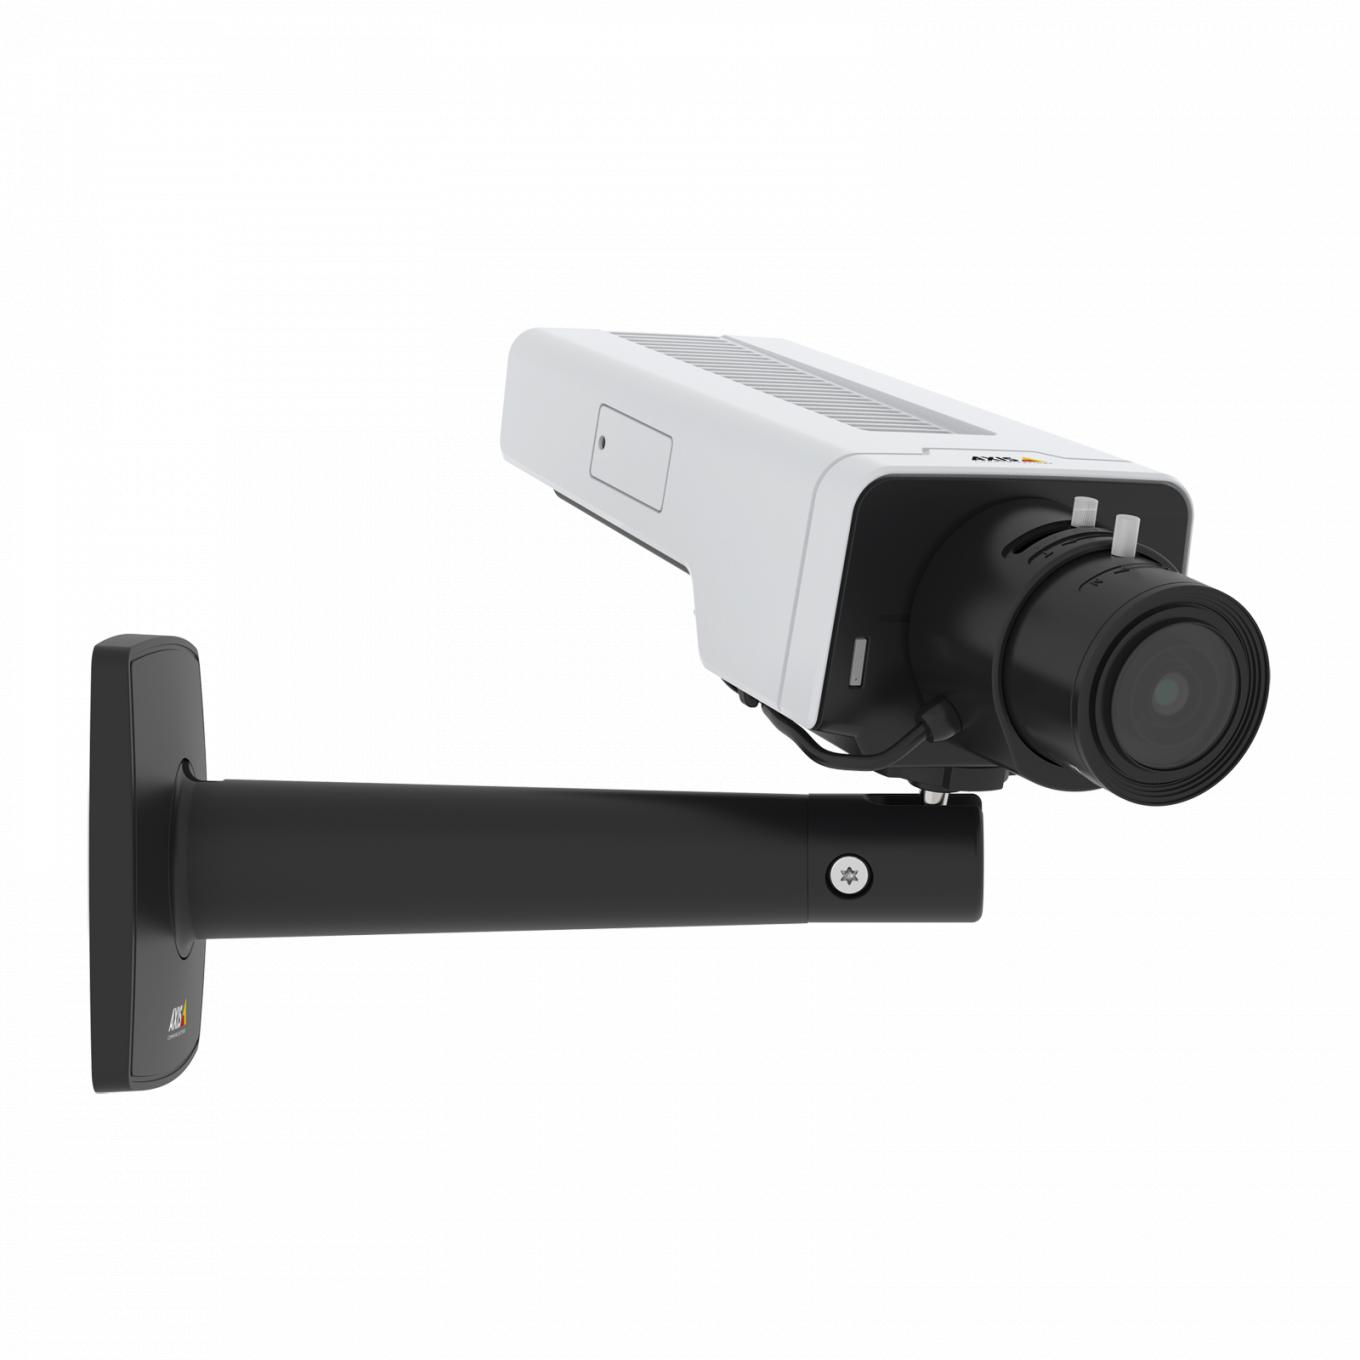 La caméra IP AXIS P1378 IP Camera dispose de la stabilisation d'image électronique. La caméra est vue depuis son angle droit.